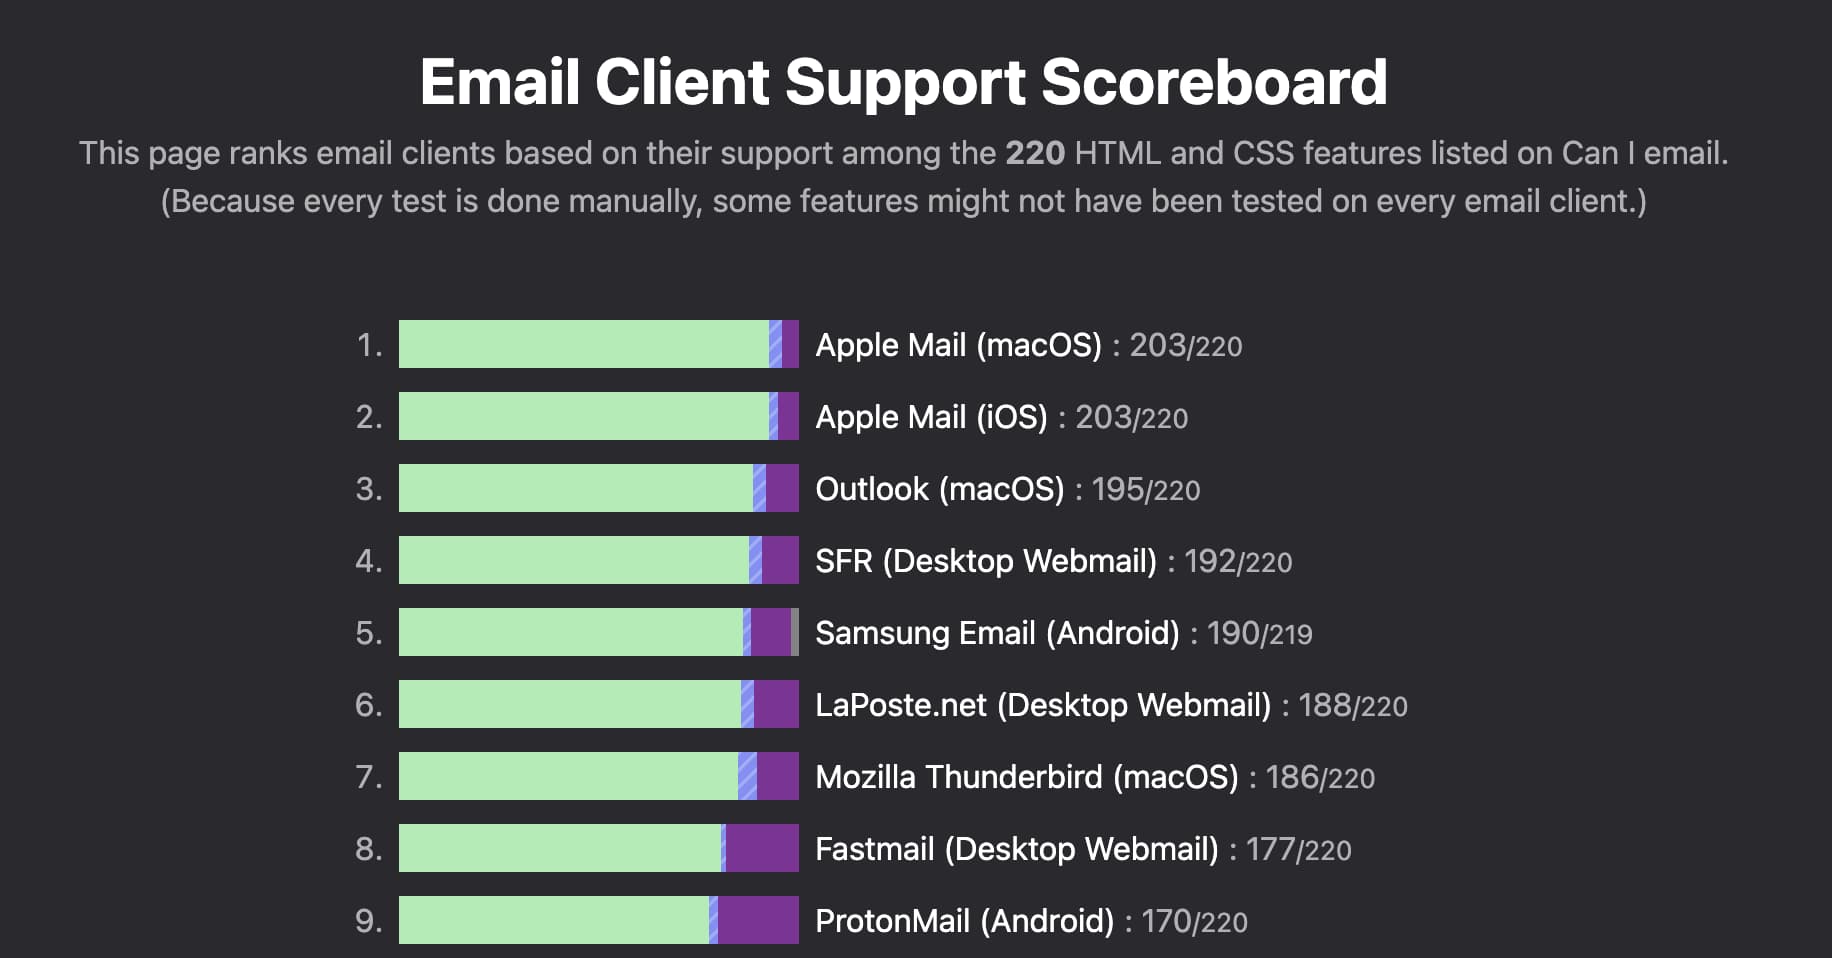 Tabla de rankings de clientes de email, apple mail en primer lugar